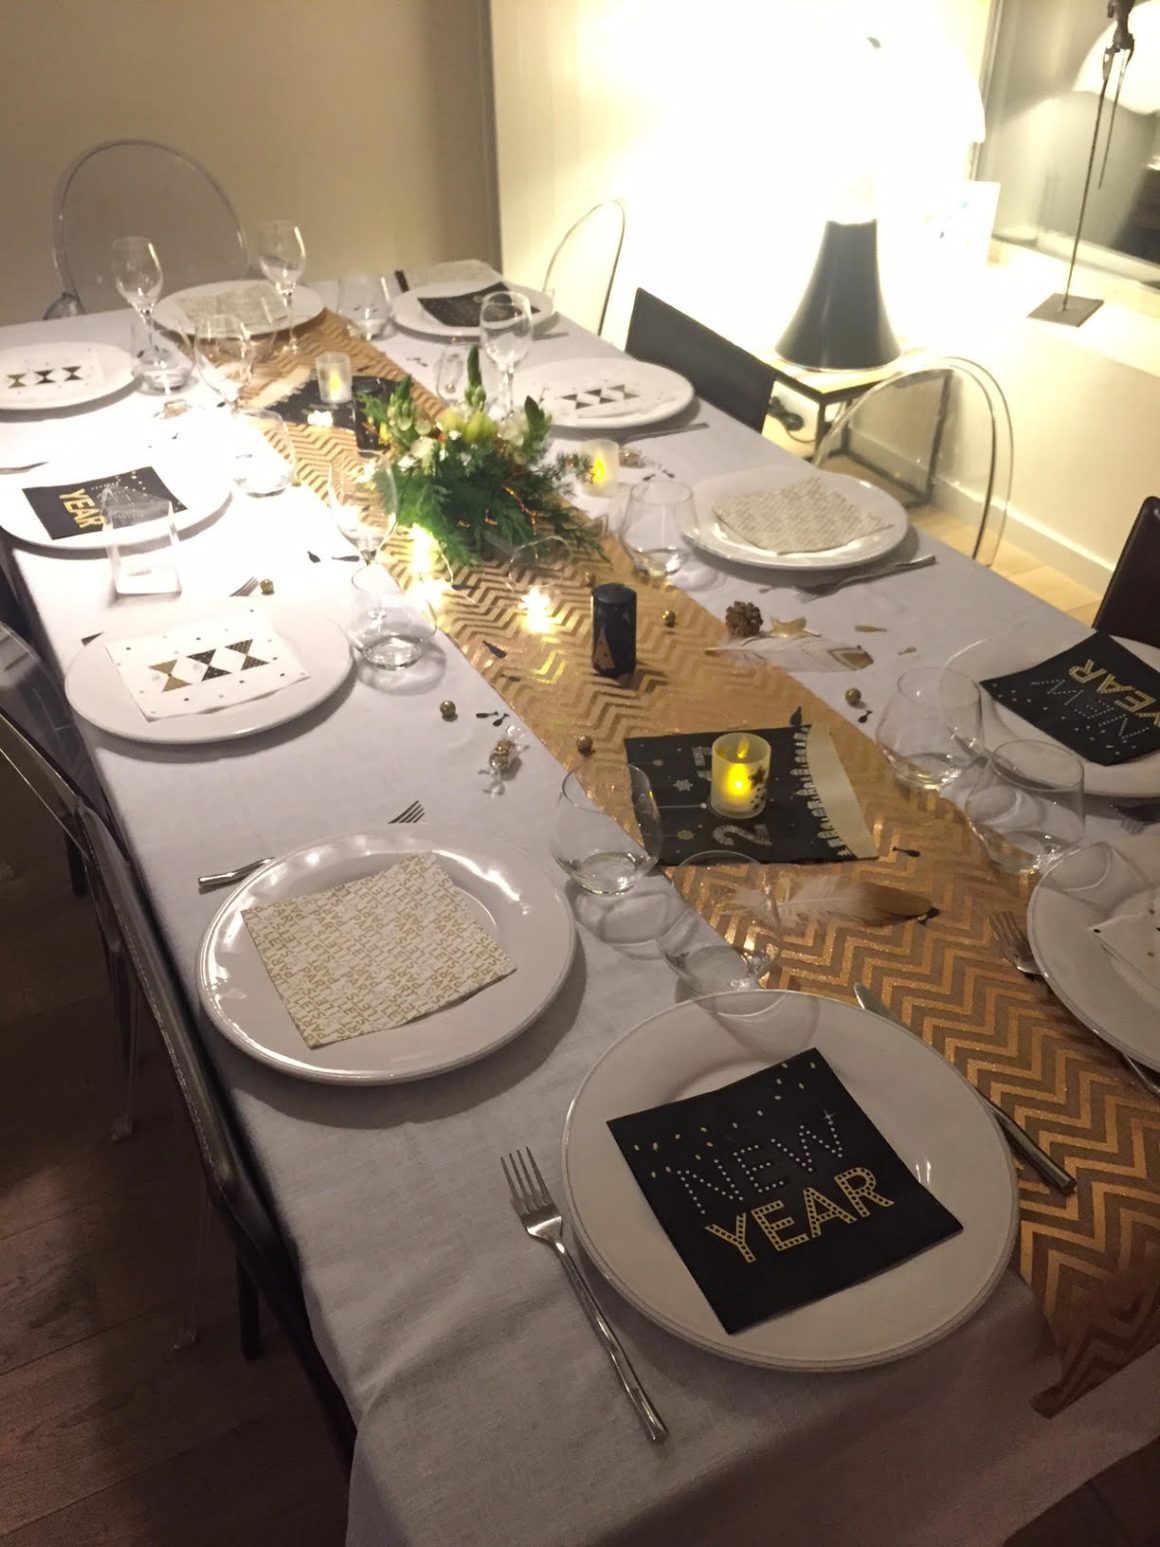 Un chemin de table dorée orne une nappe blanche, avec d'élégantes assiettes de style minimaliste